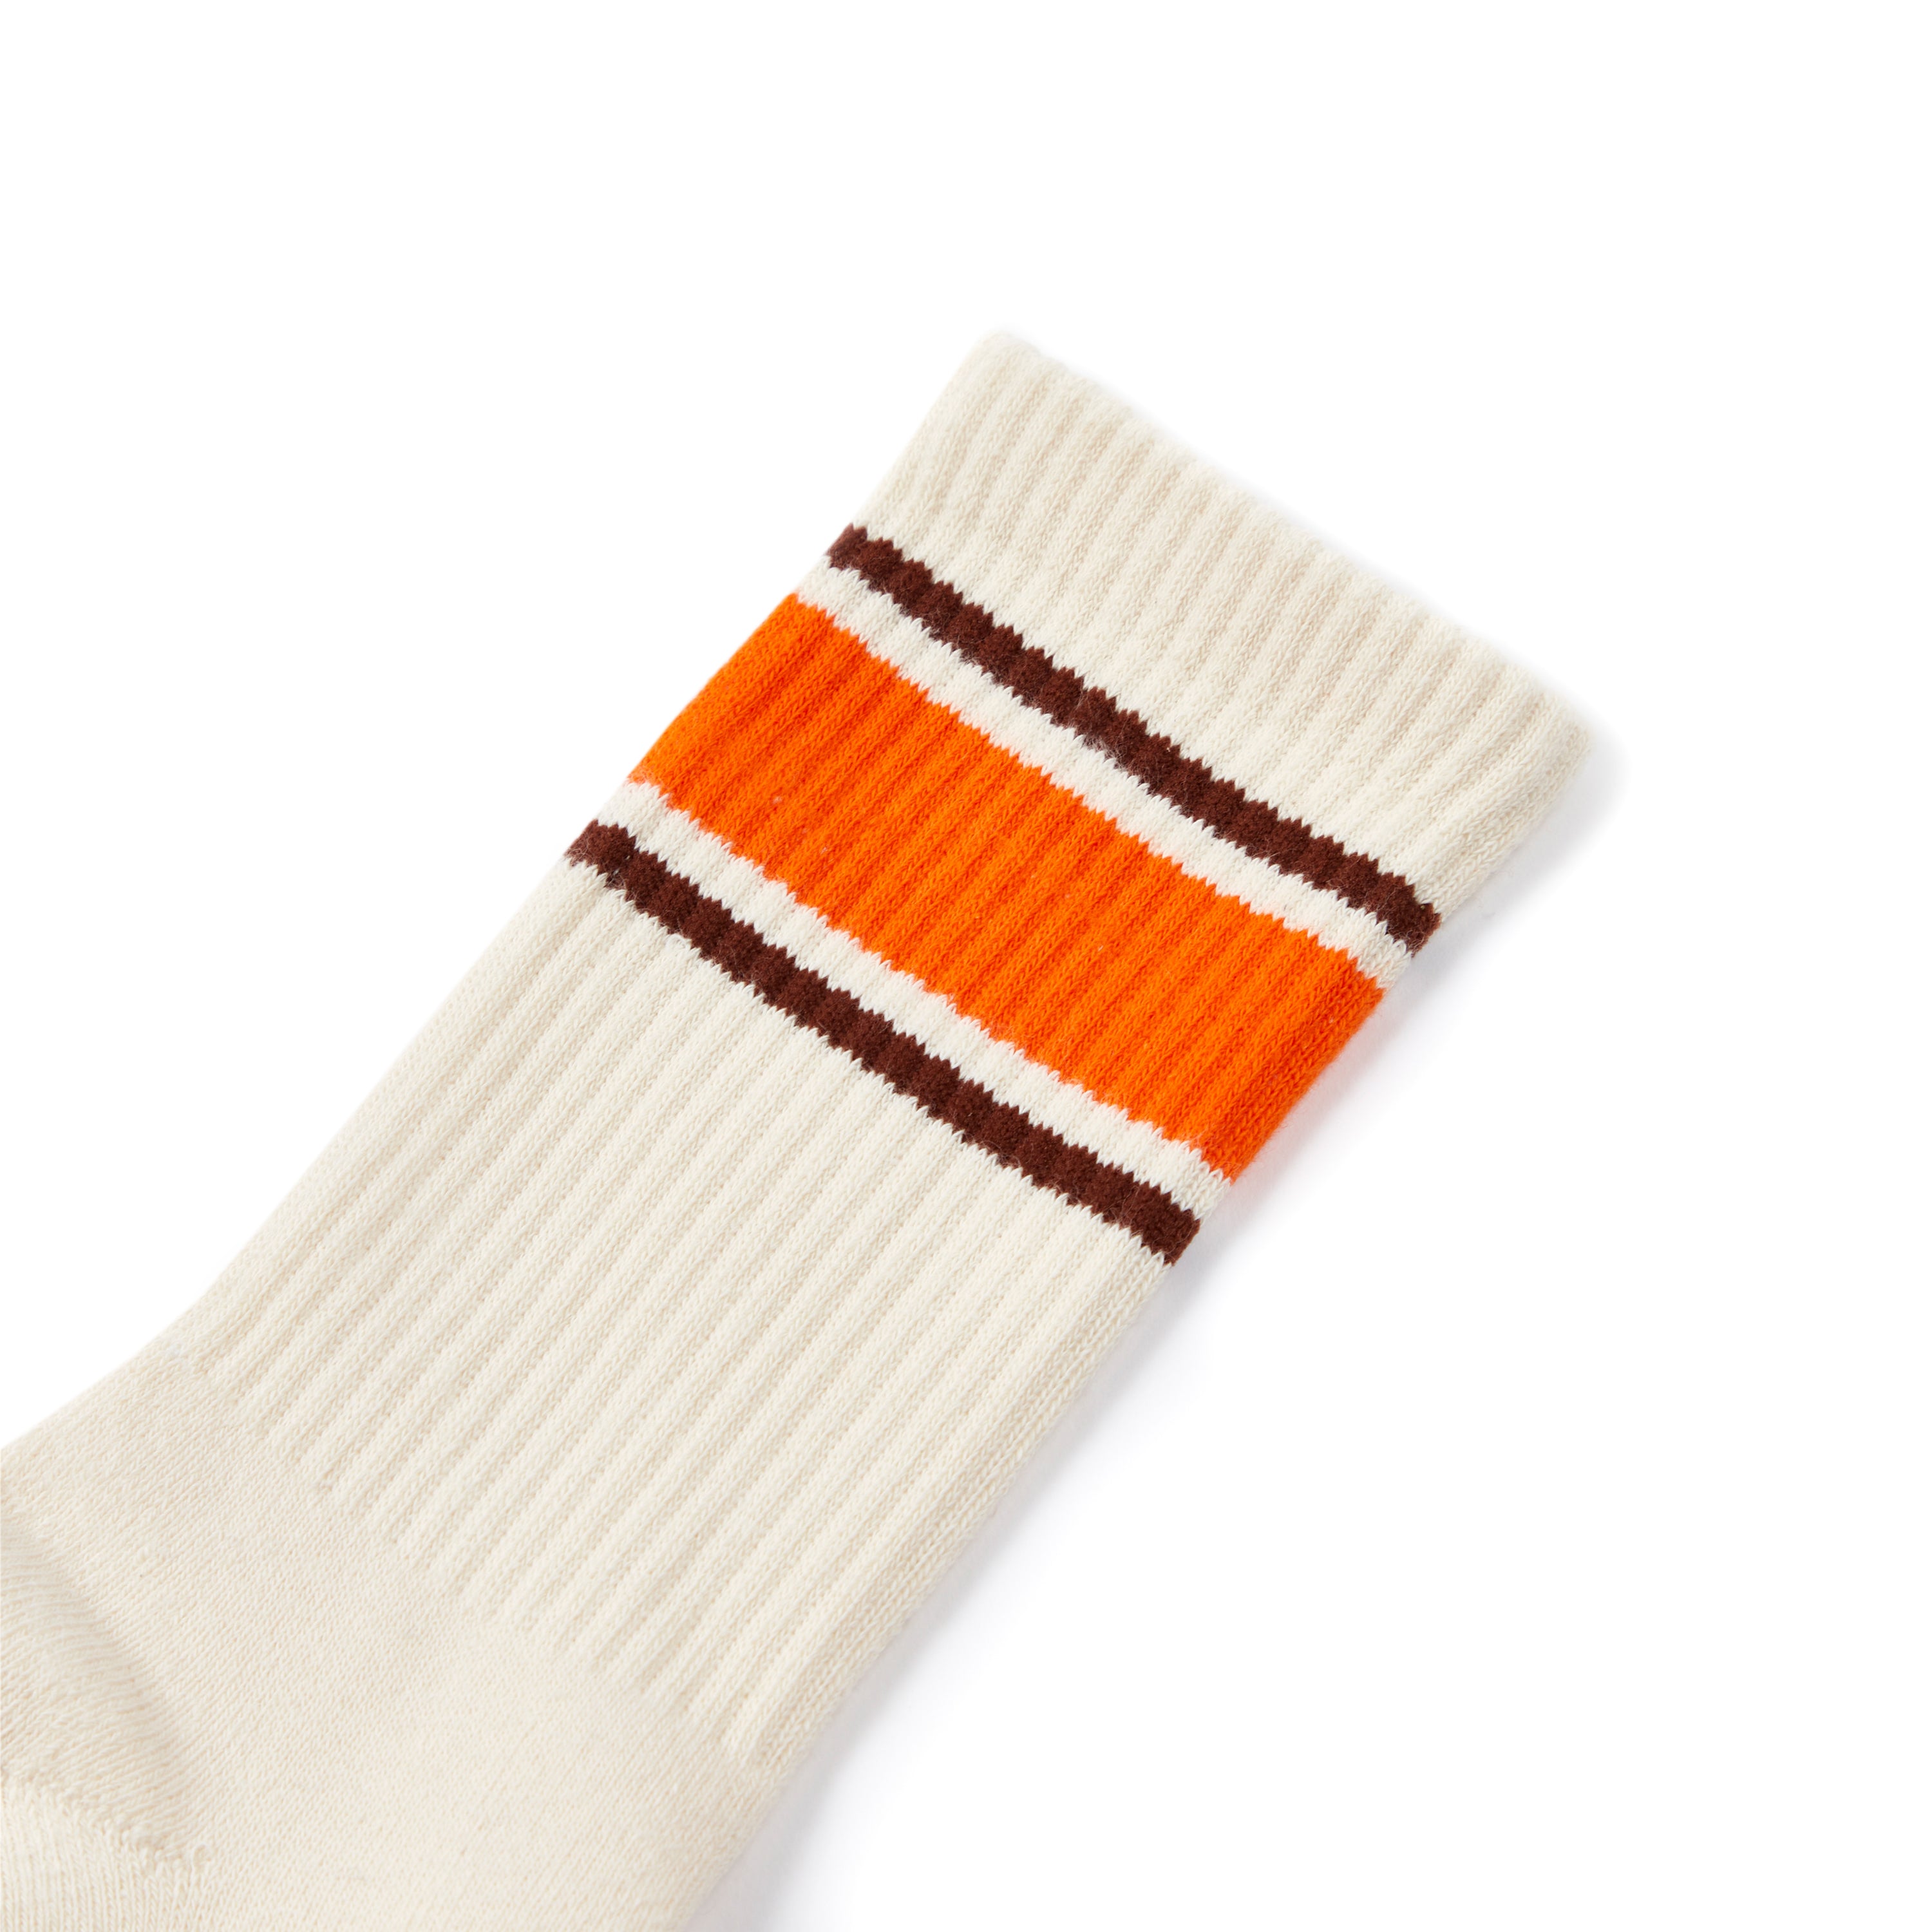 Varsity Stripe Socks – Only NY